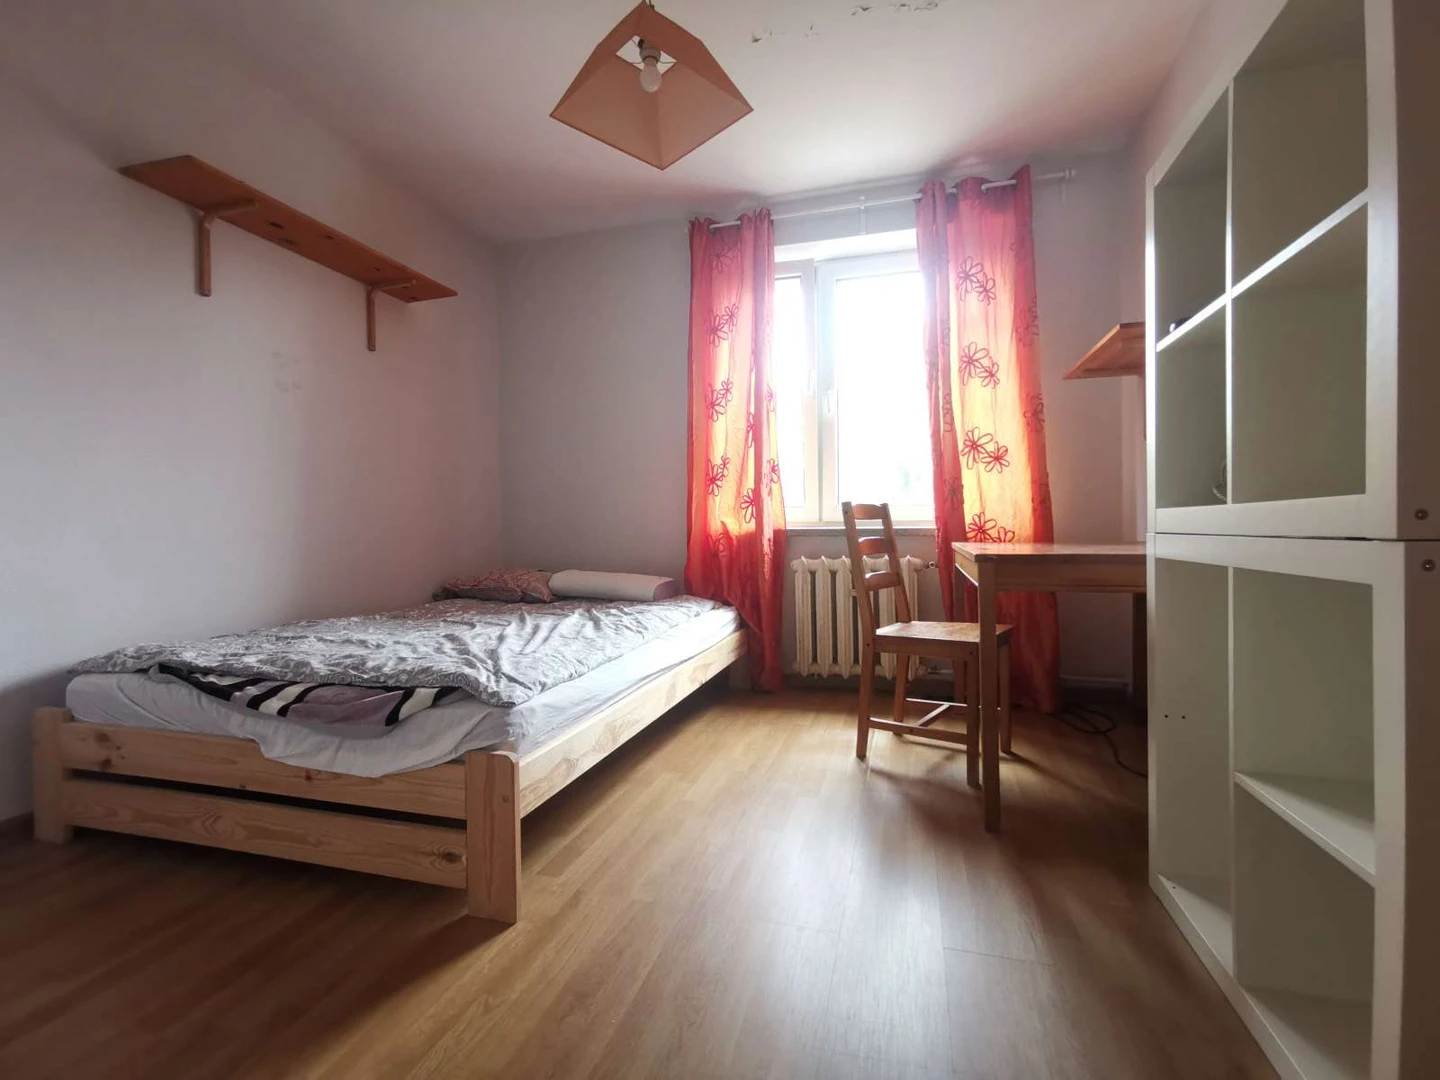 Monatliche Vermietung von Zimmern in krakow